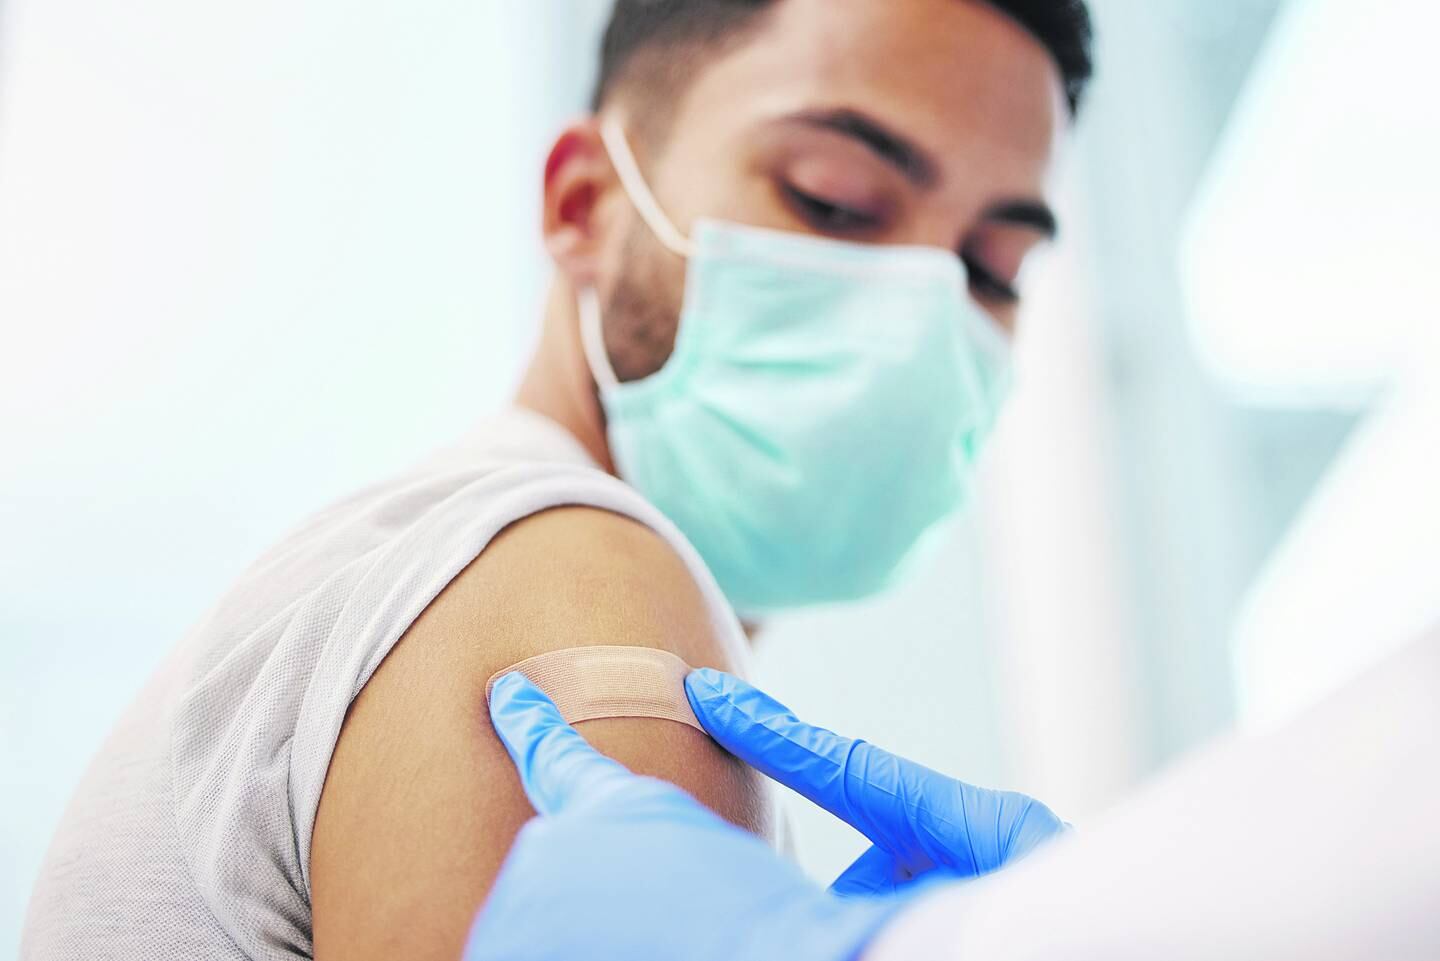 Le colocan una curita a un joven en el brazo después de ponerle una vacuna.